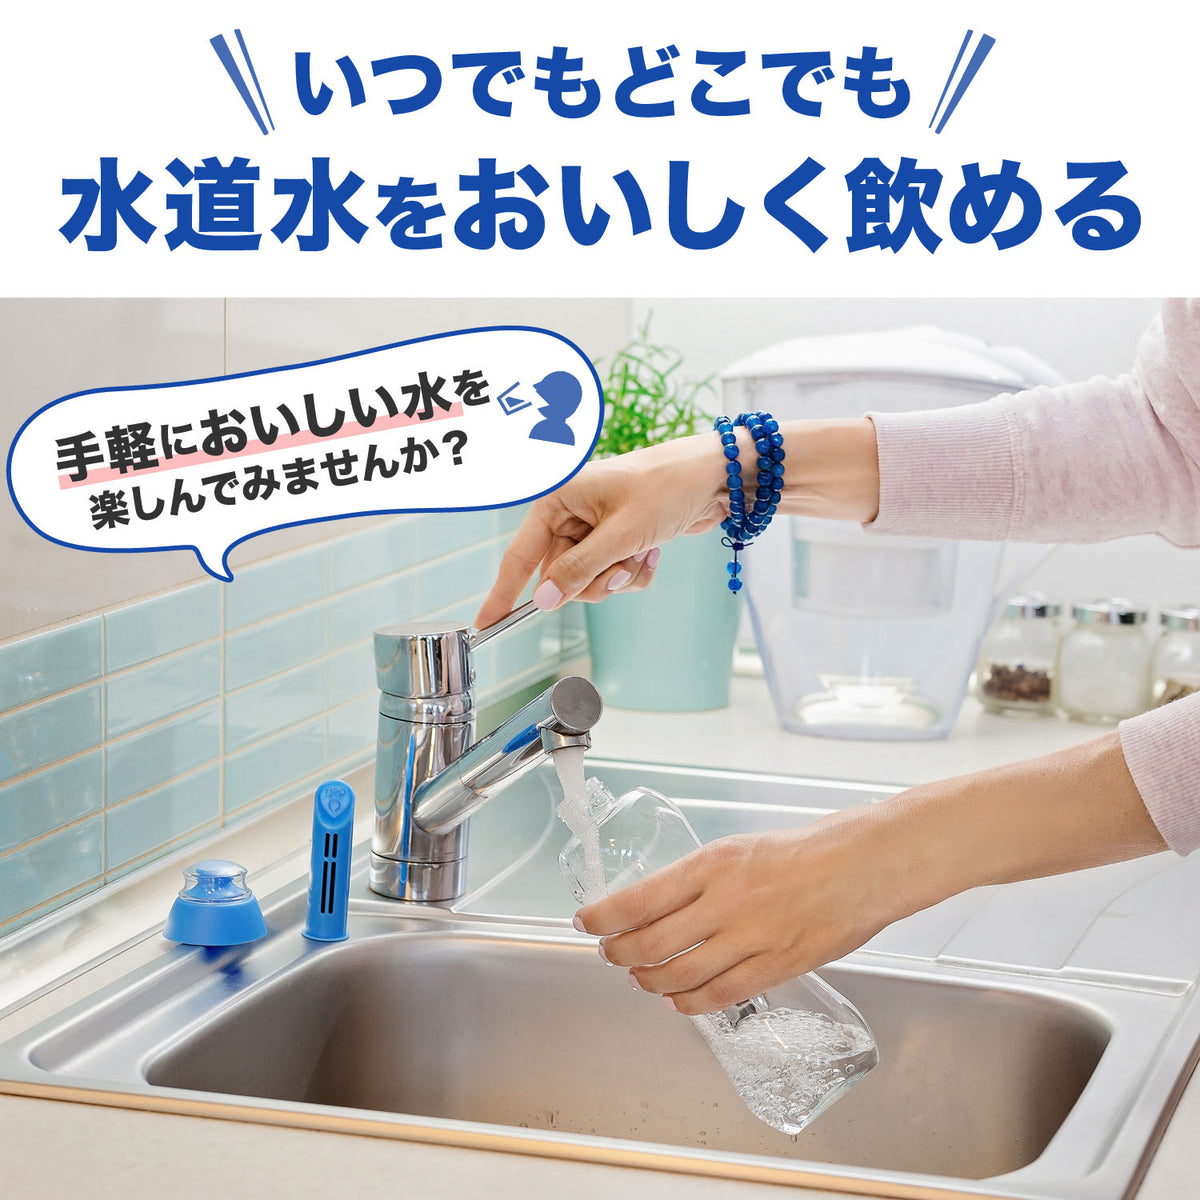 DAFI 浄水ボトル用カートリッジ2個 + キャップ1個入り – DAFI JAPAN